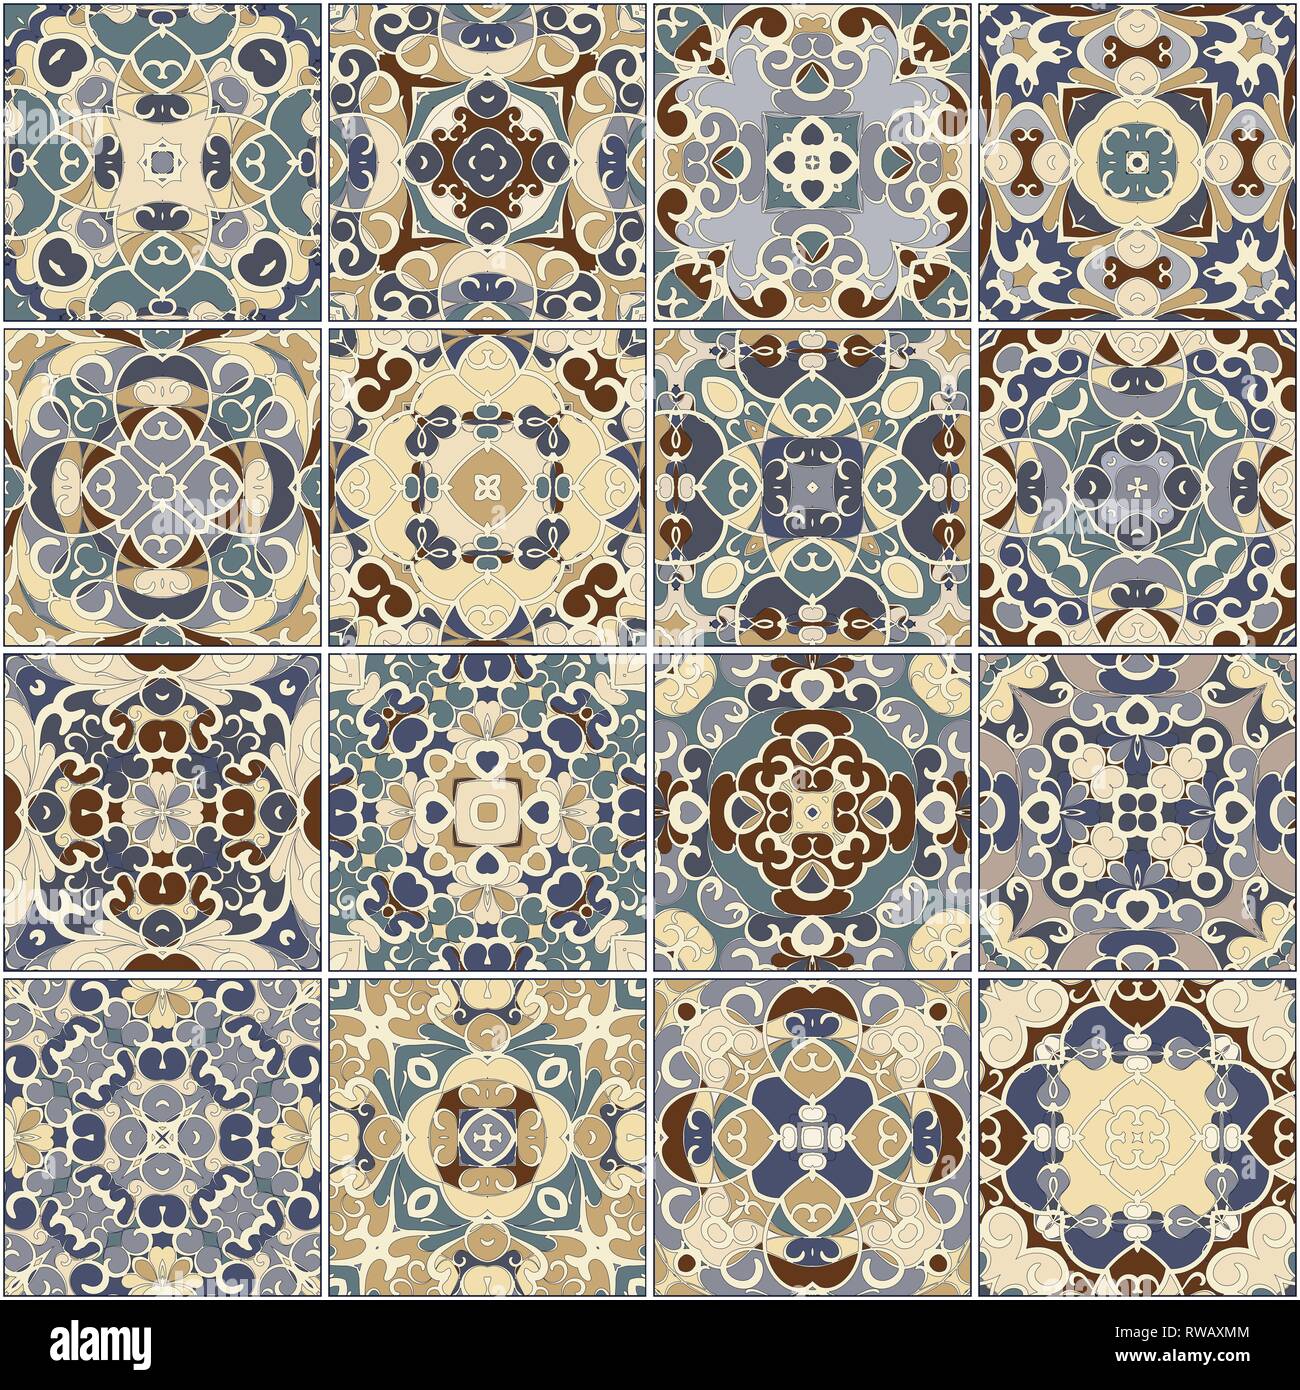 Eine Sammlung von Keramikfliesen in Blau und Beige retro Farben. Eine Reihe von quadratischen Muster im ethnischen Stil. Vector Illustration. Stock Vektor